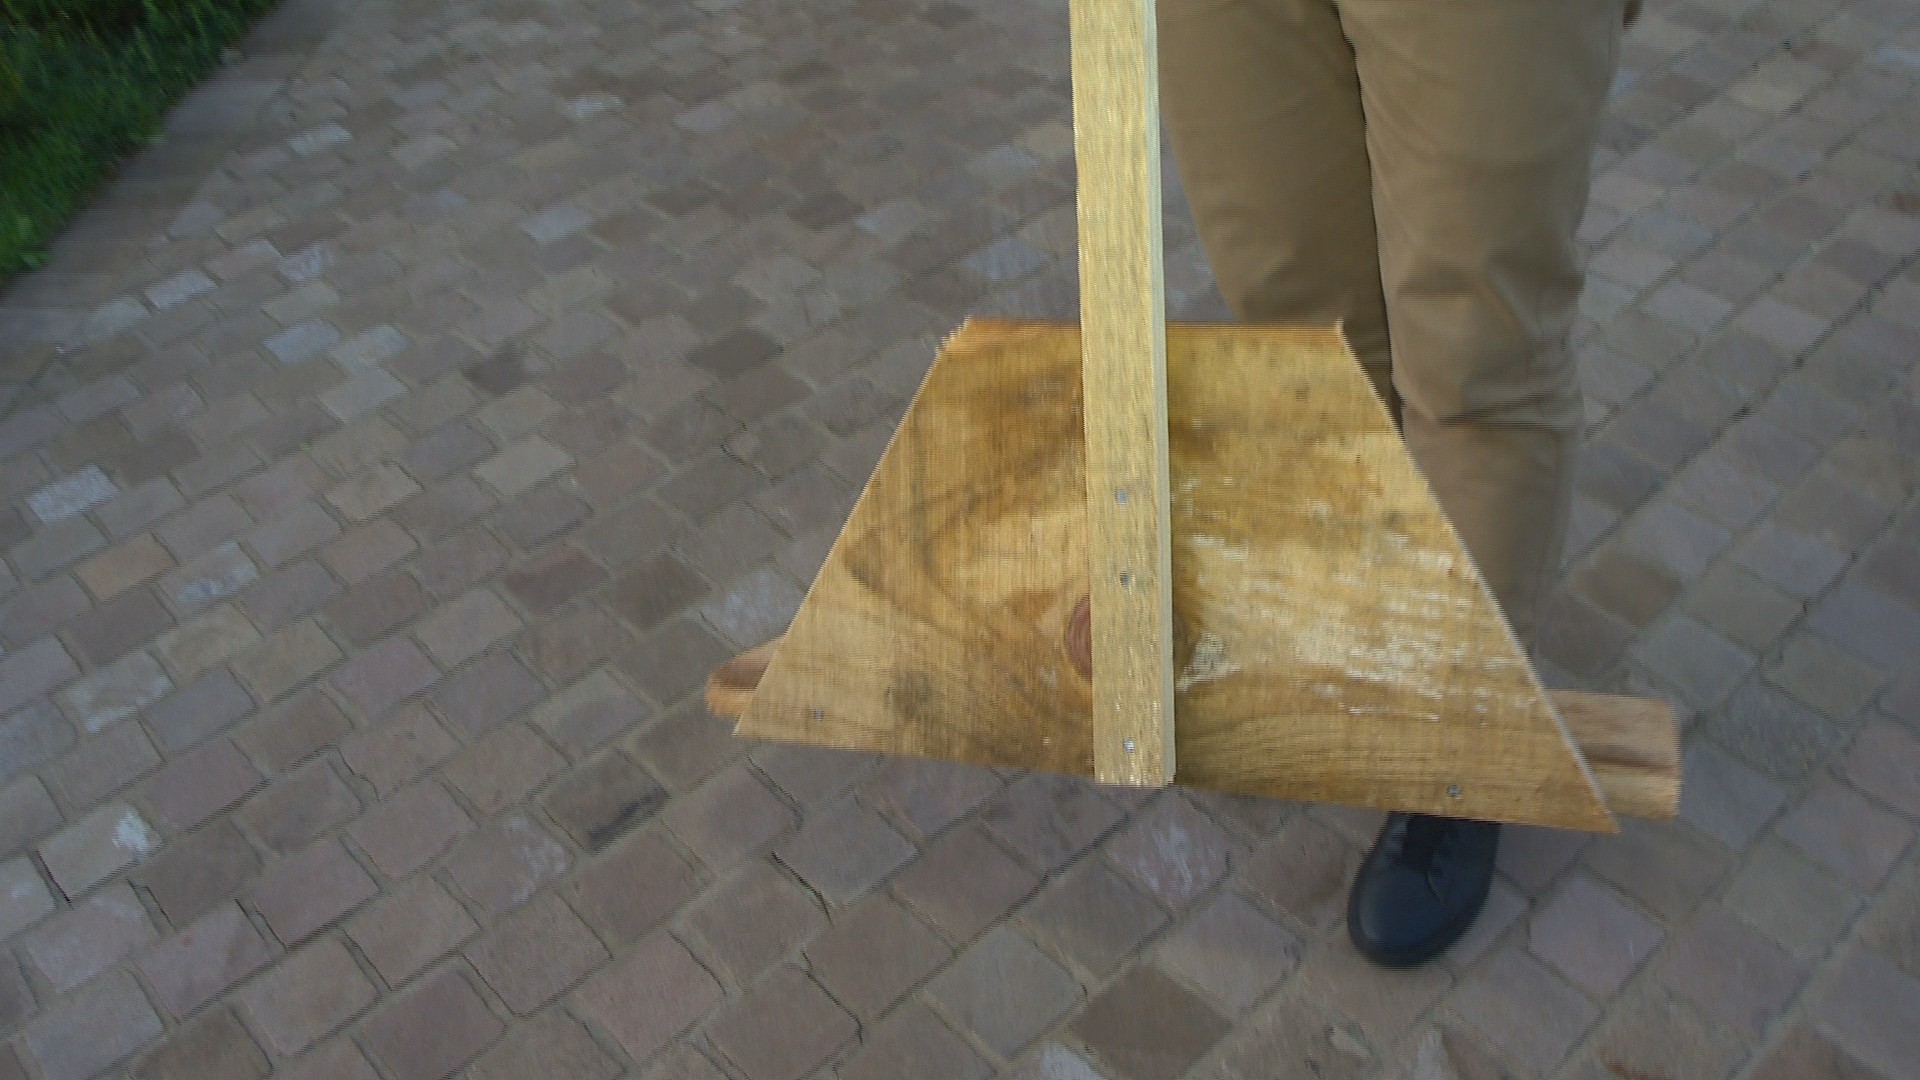 Voluntários fabricam rodos de madeira para ajudar na limpeza das casas atingidas pelas enchentes no RS